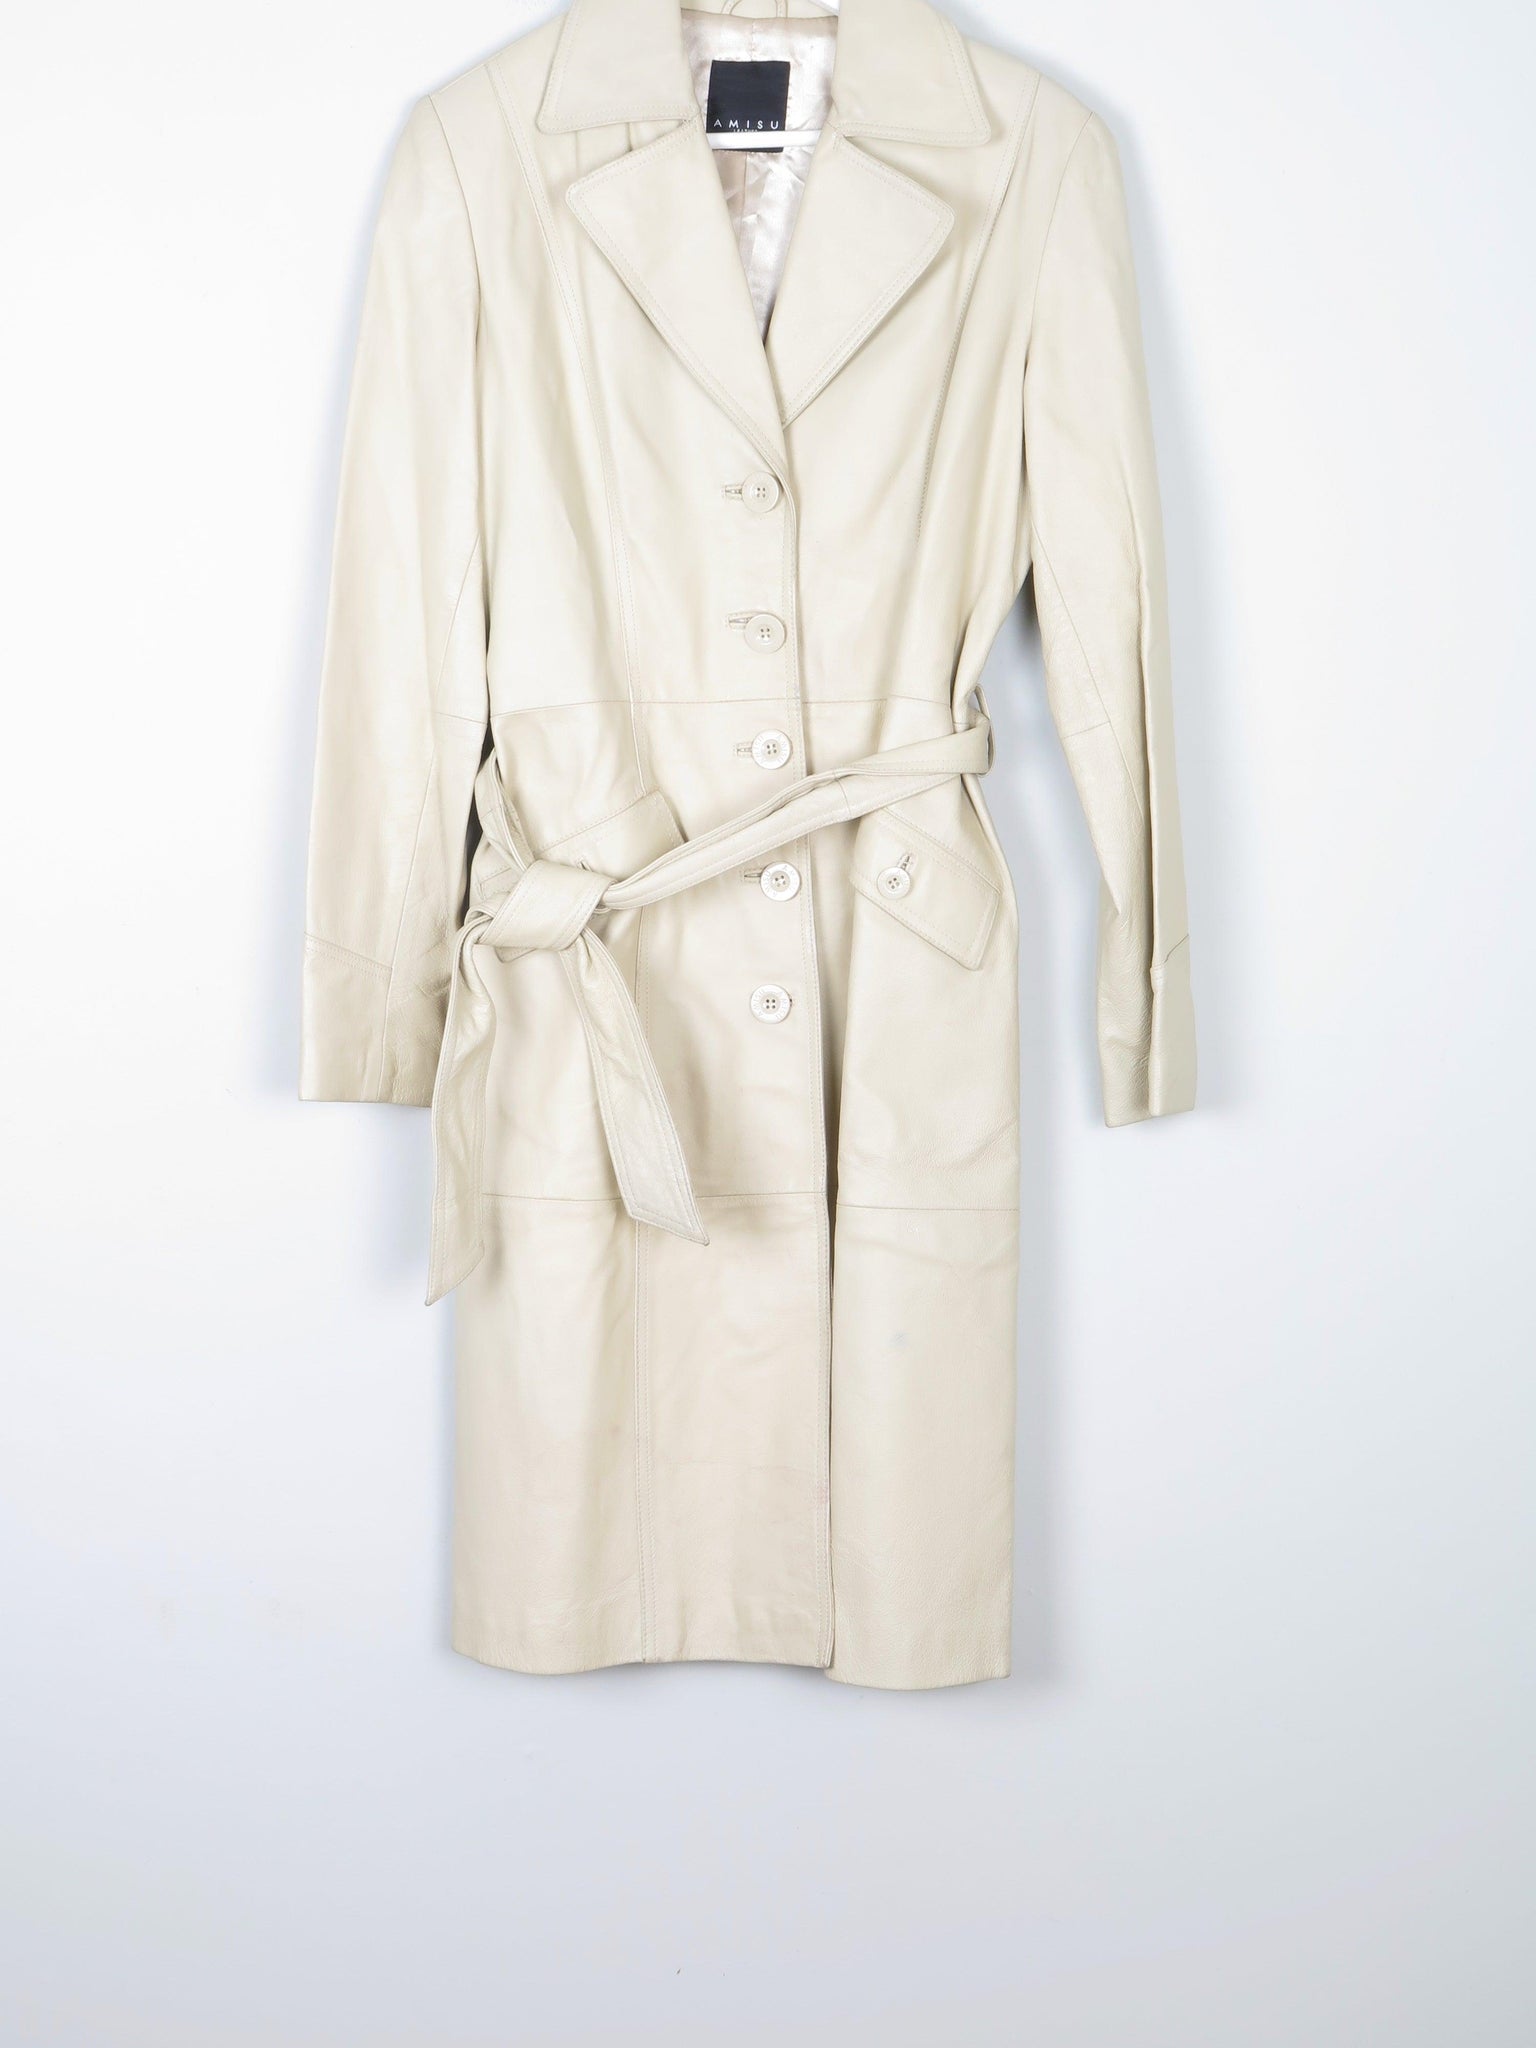 Cream Long Leather Amisu Vintage Style Coat 10/12 - The Harlequin